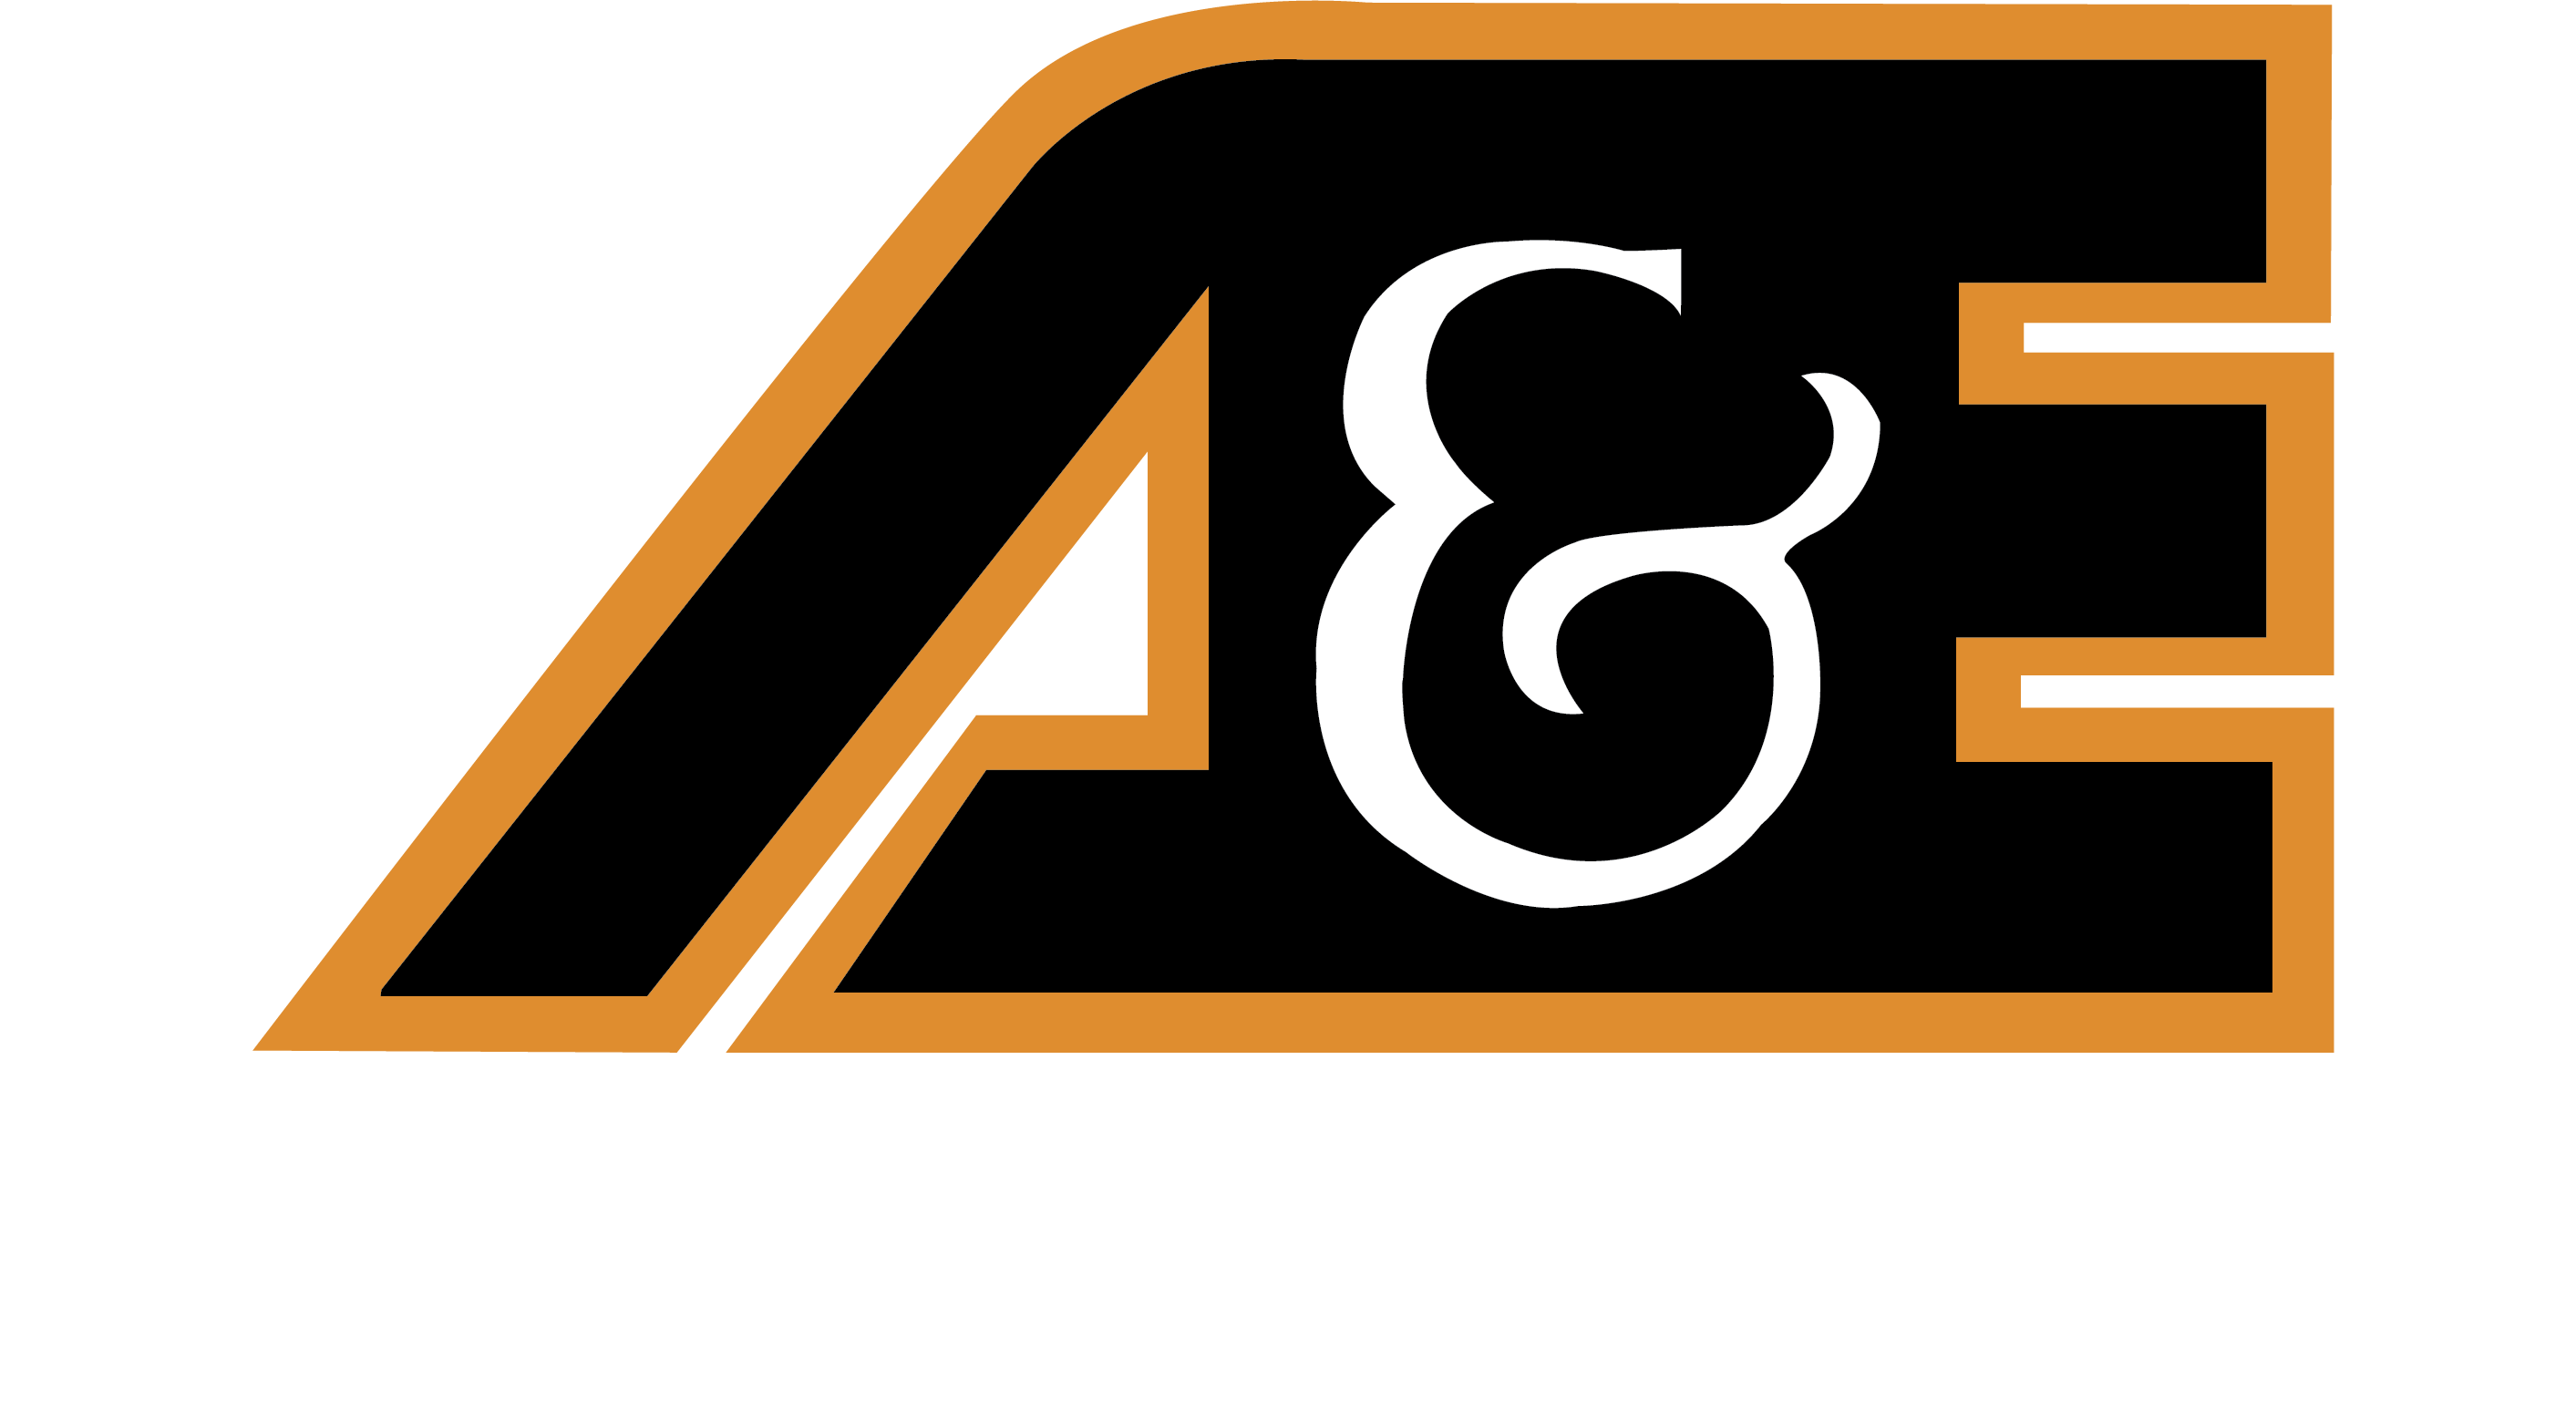 A&E tools